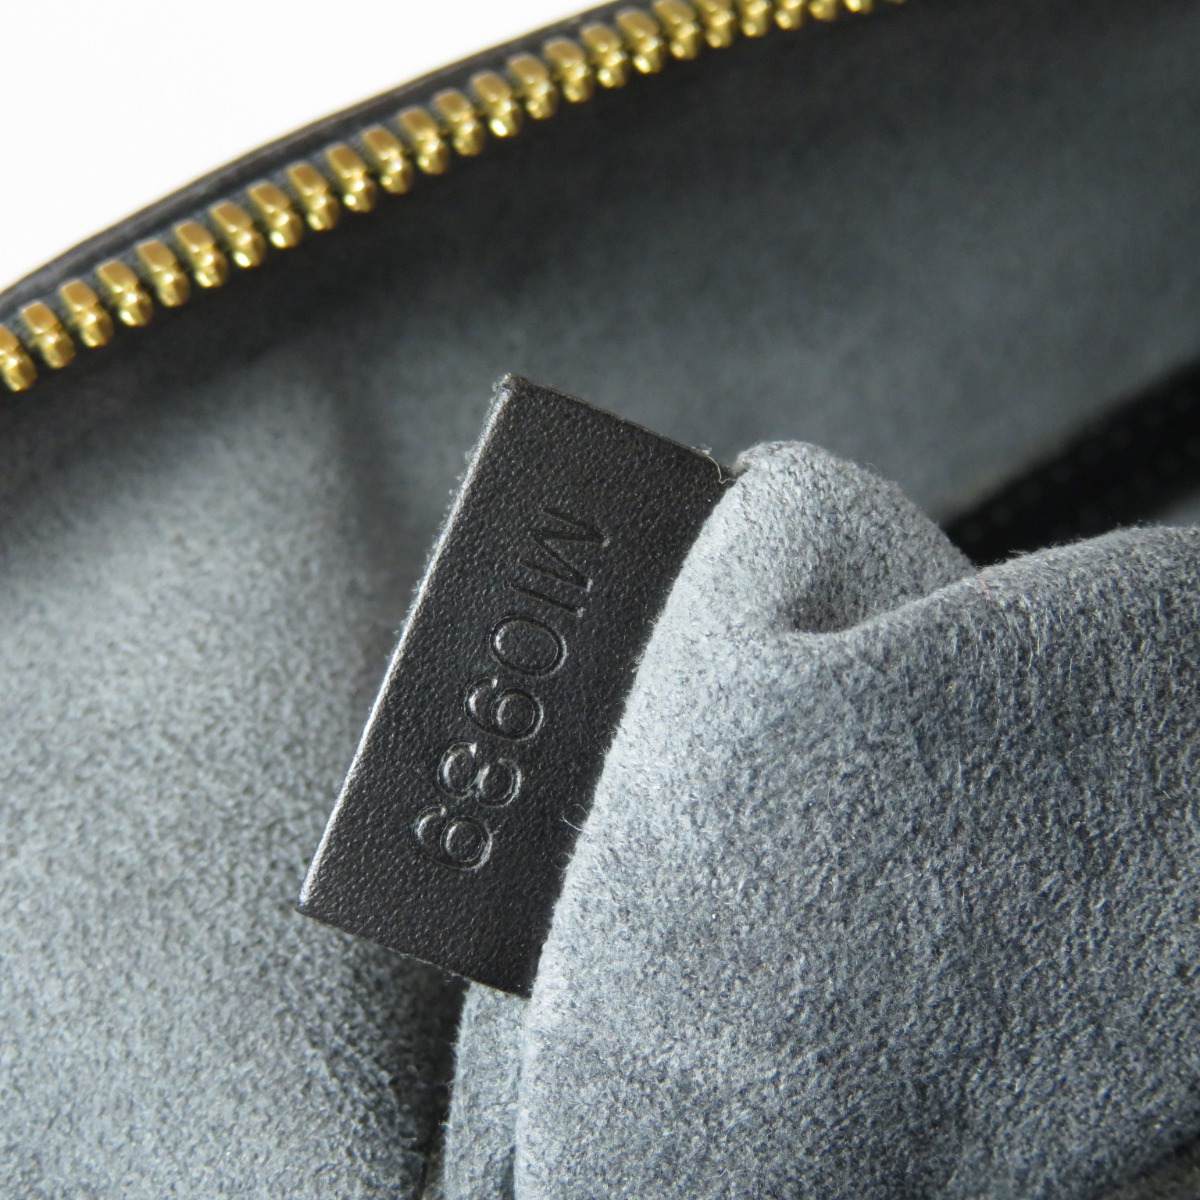 LOUIS VUITTON M52142 Handbag Alma Epi Gold Hardware Epi Leather | eBay